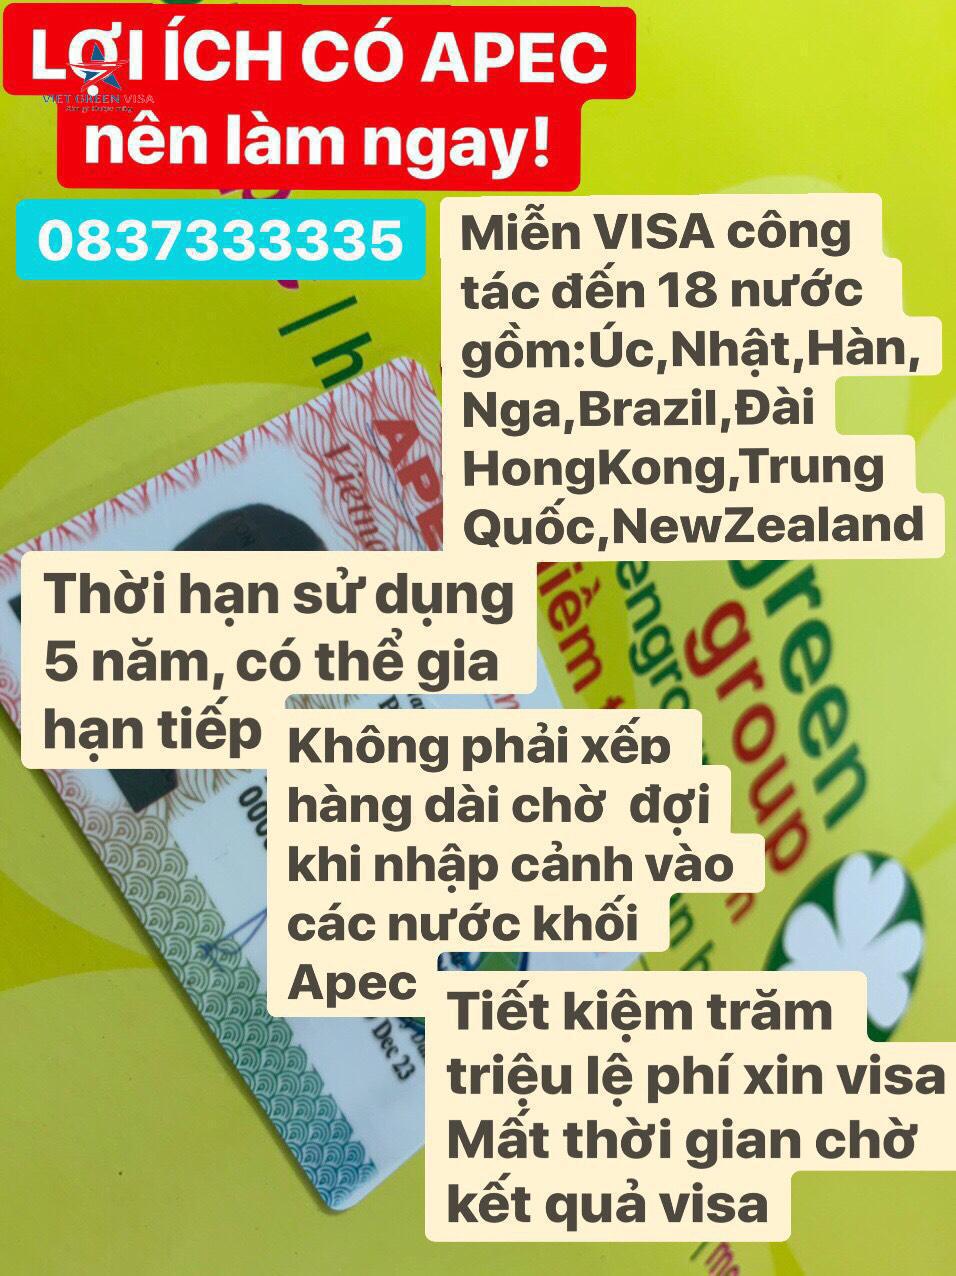 Dịch vụ gia hạn thẻ Apec tại Phú Yên uy tín